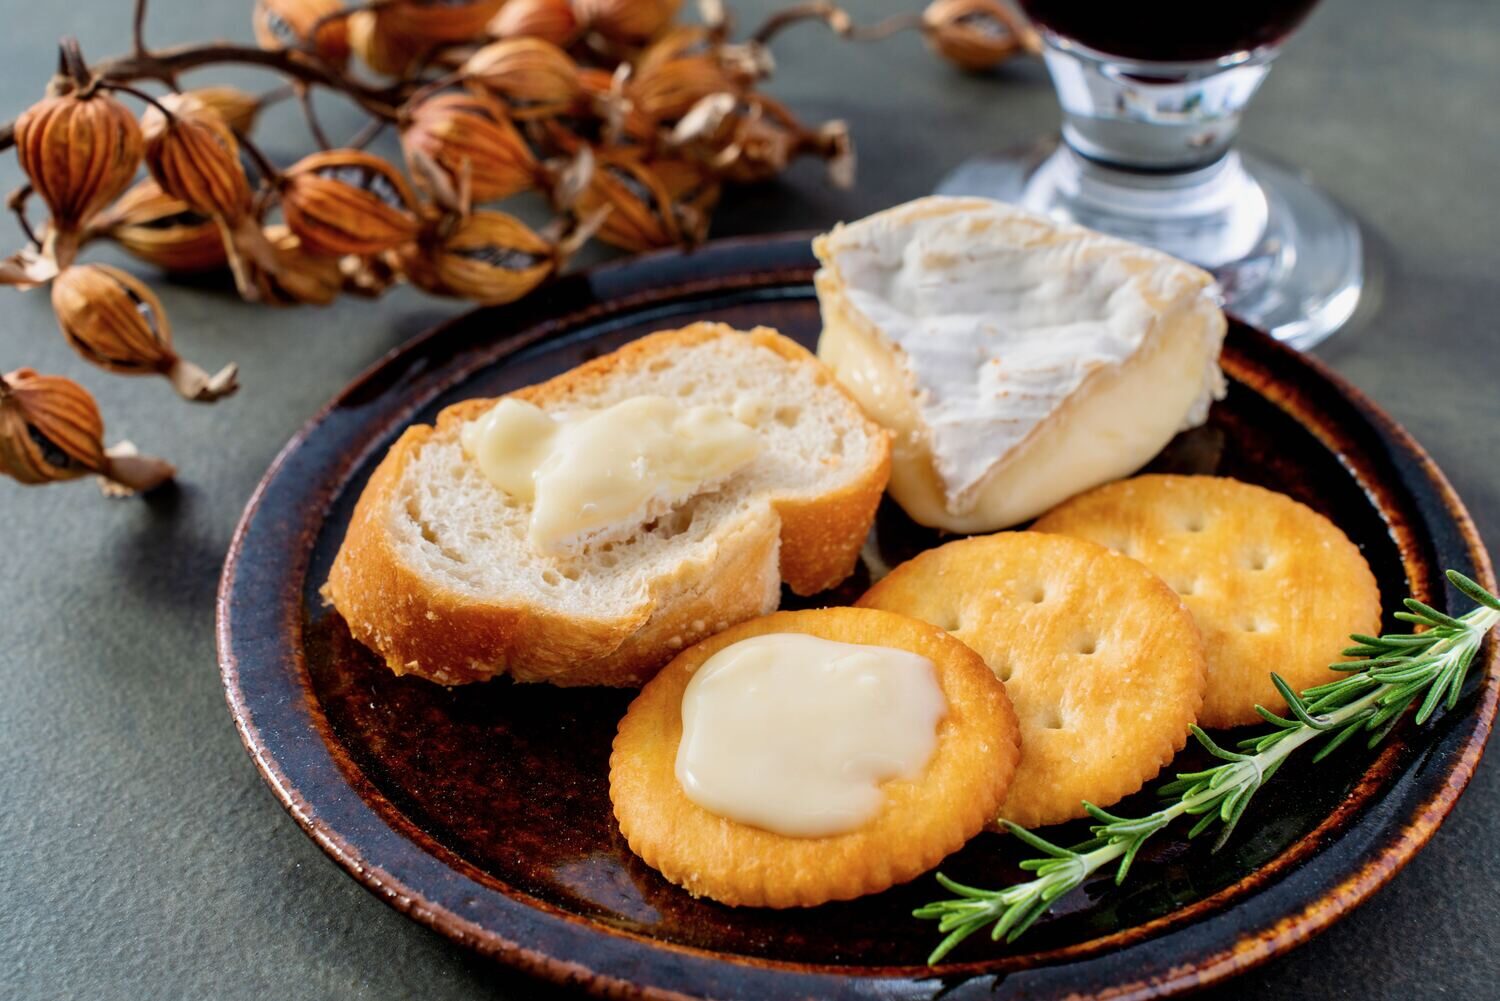 のぼりべつ酪農館の白カビチーズ「ニュービアンカ」をクラッカーやバゲットに塗って食べる